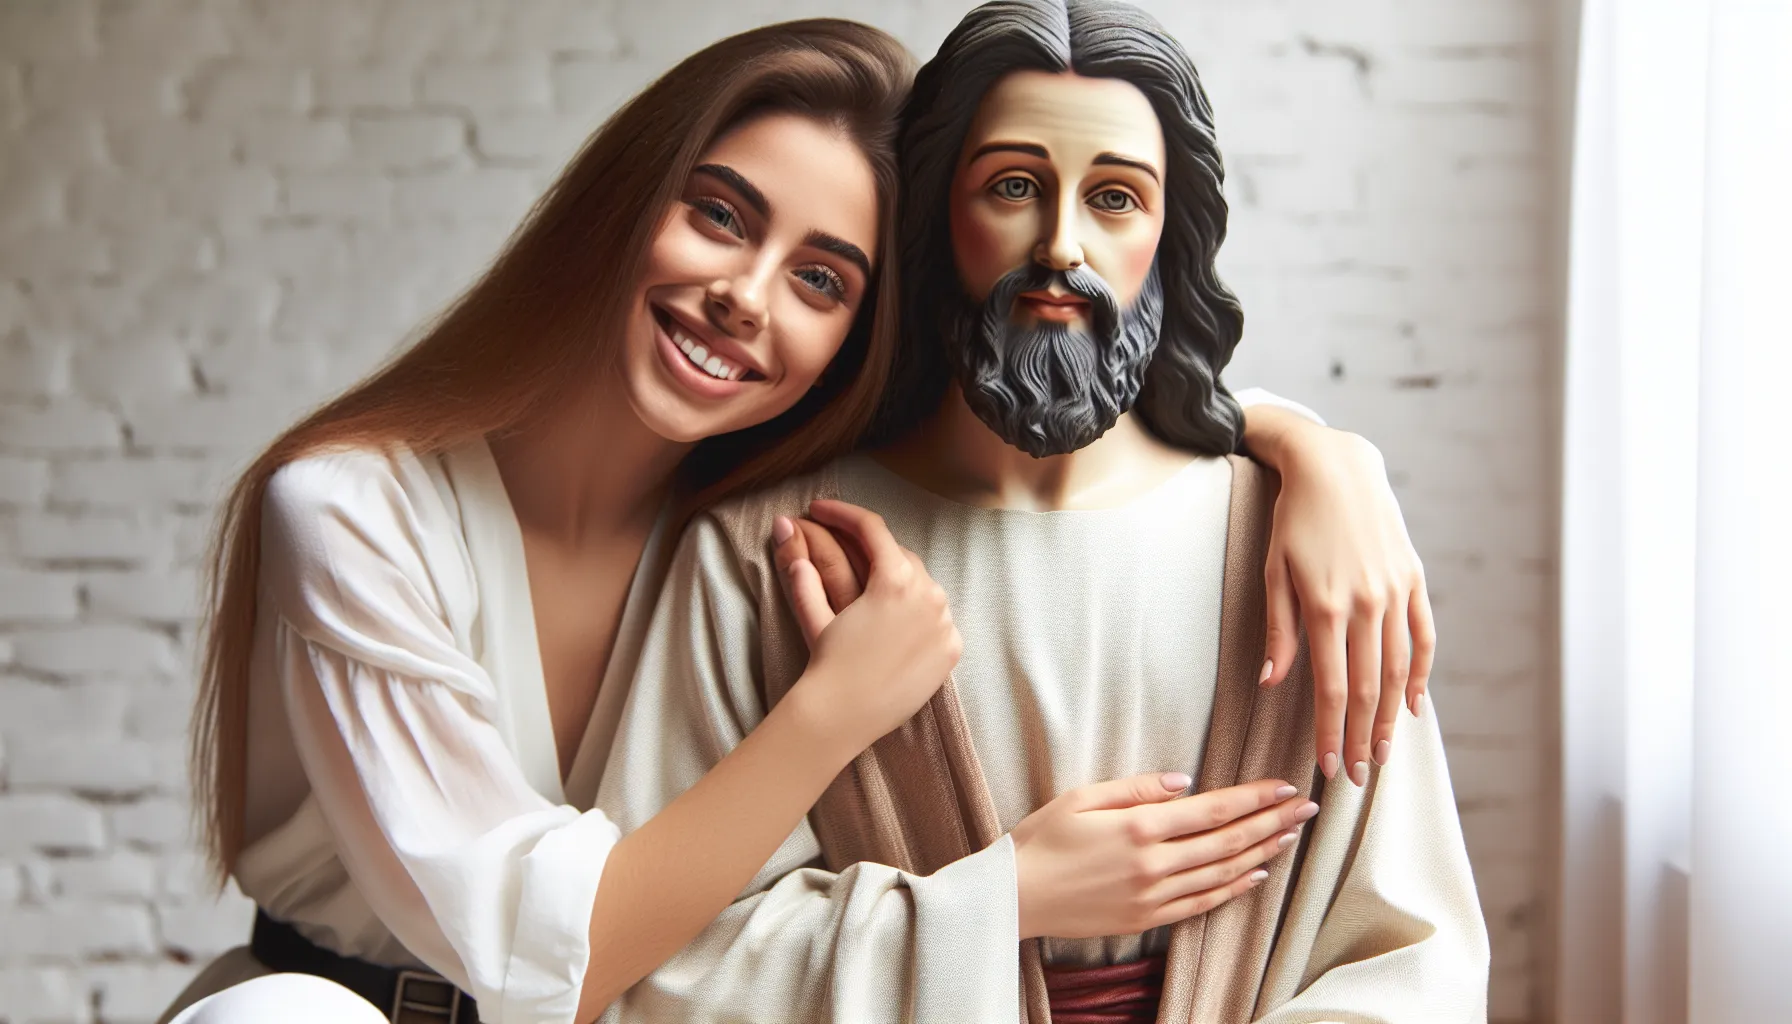 Imagen de una mujer sonriente abrazando a Jesús